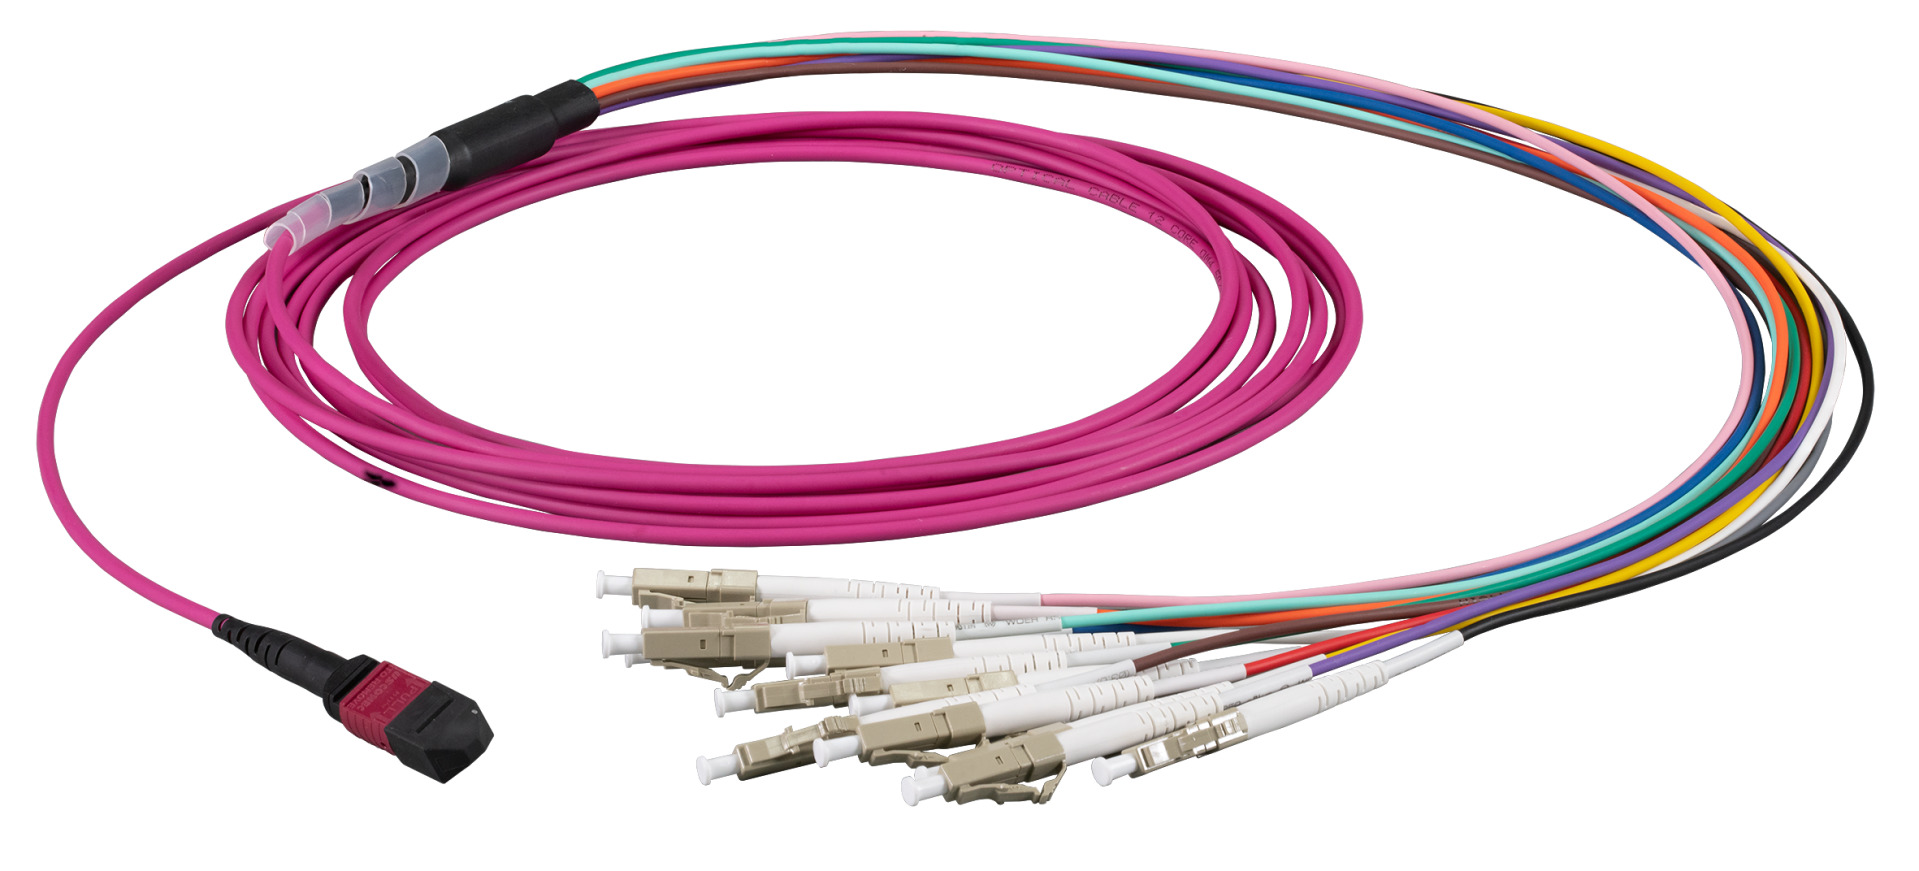 MTP®-F/LC 12-fiber patch cable OM4, LSZH erica-violet, 10m